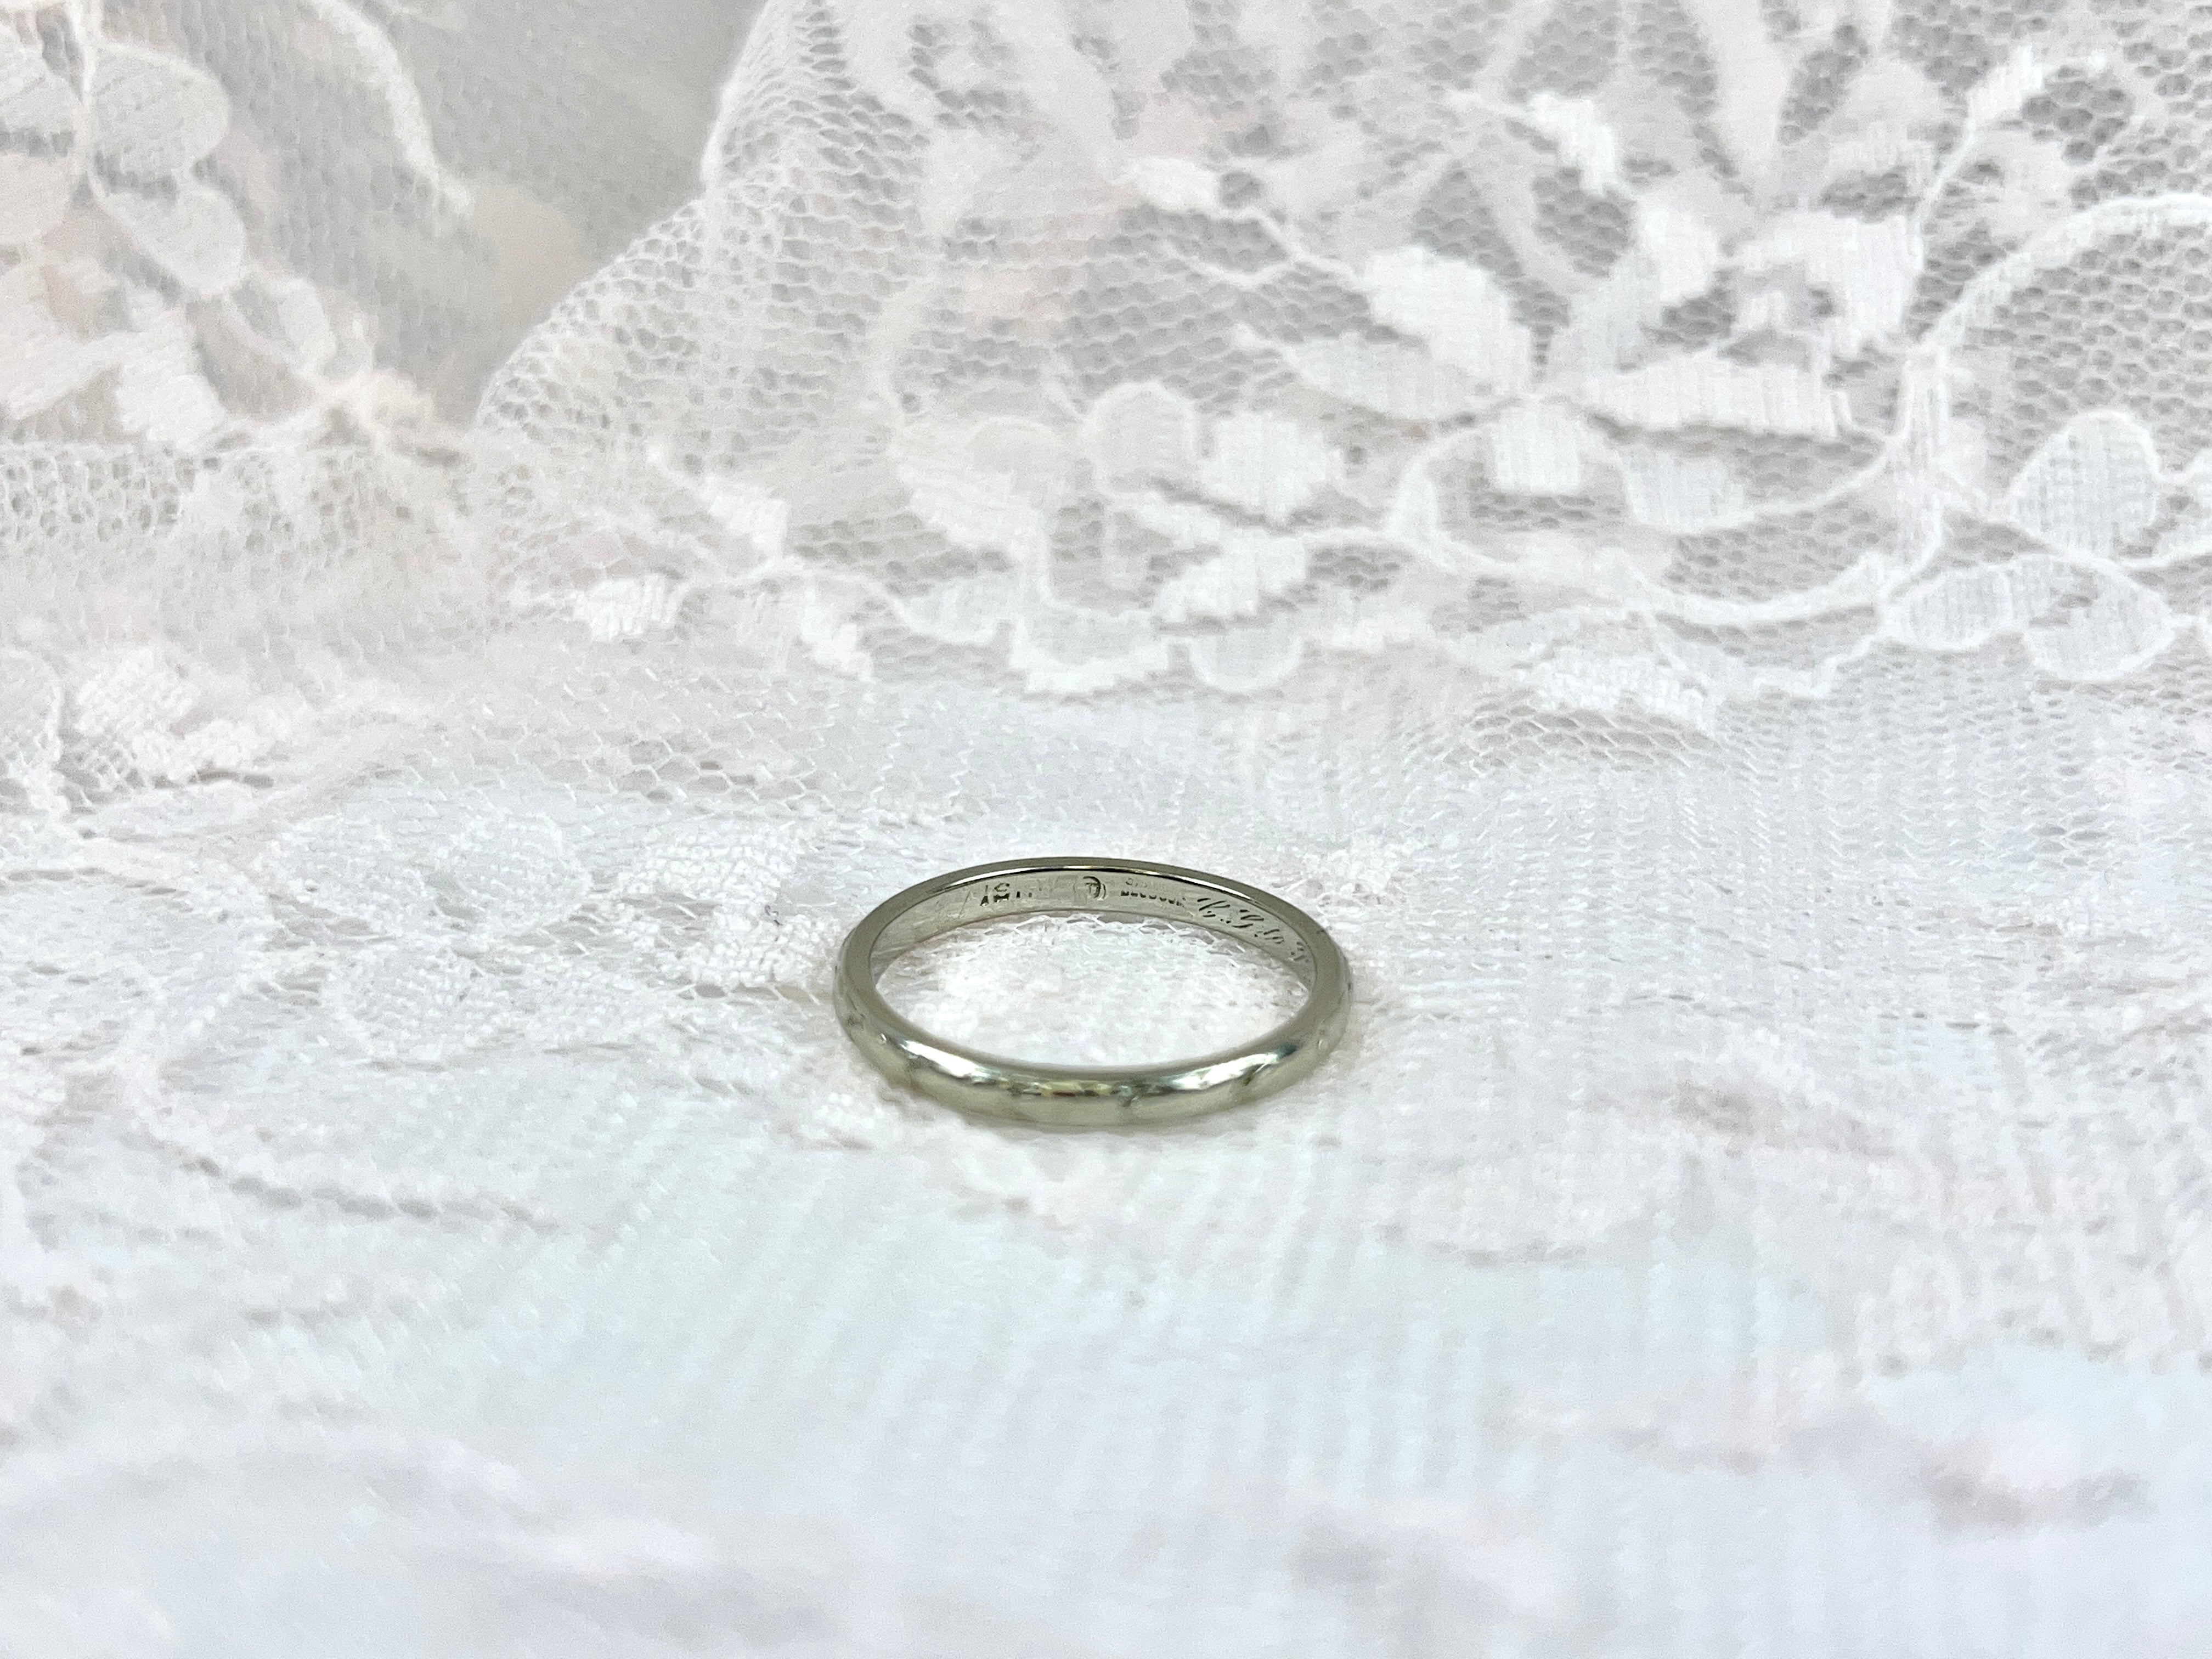 Art Deco Traub Orange Blossom Wedding Ring, C.G. to M.B. 11-16-24, Size 8